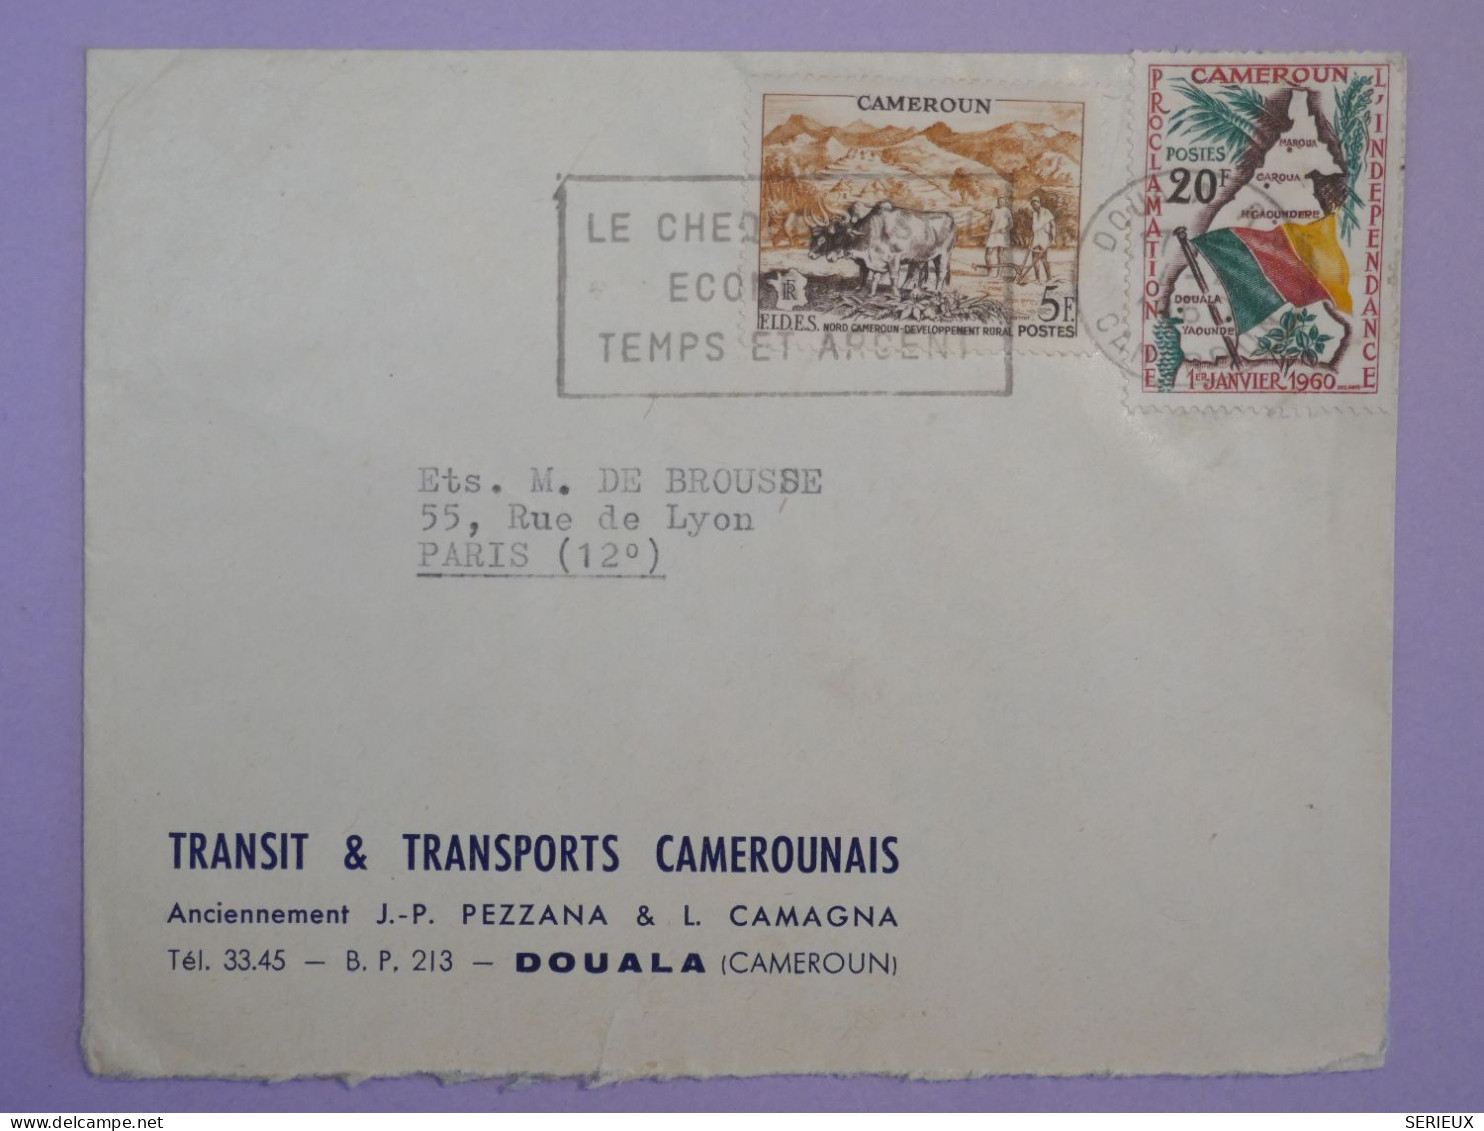 BS18 CAMEROUN  BELLE LETTRE PRIVEE 1960 PAR AVION DOUALA  A PARIS FRANCE +  + AFFR.INTERESSANT++ ++ - Briefe U. Dokumente